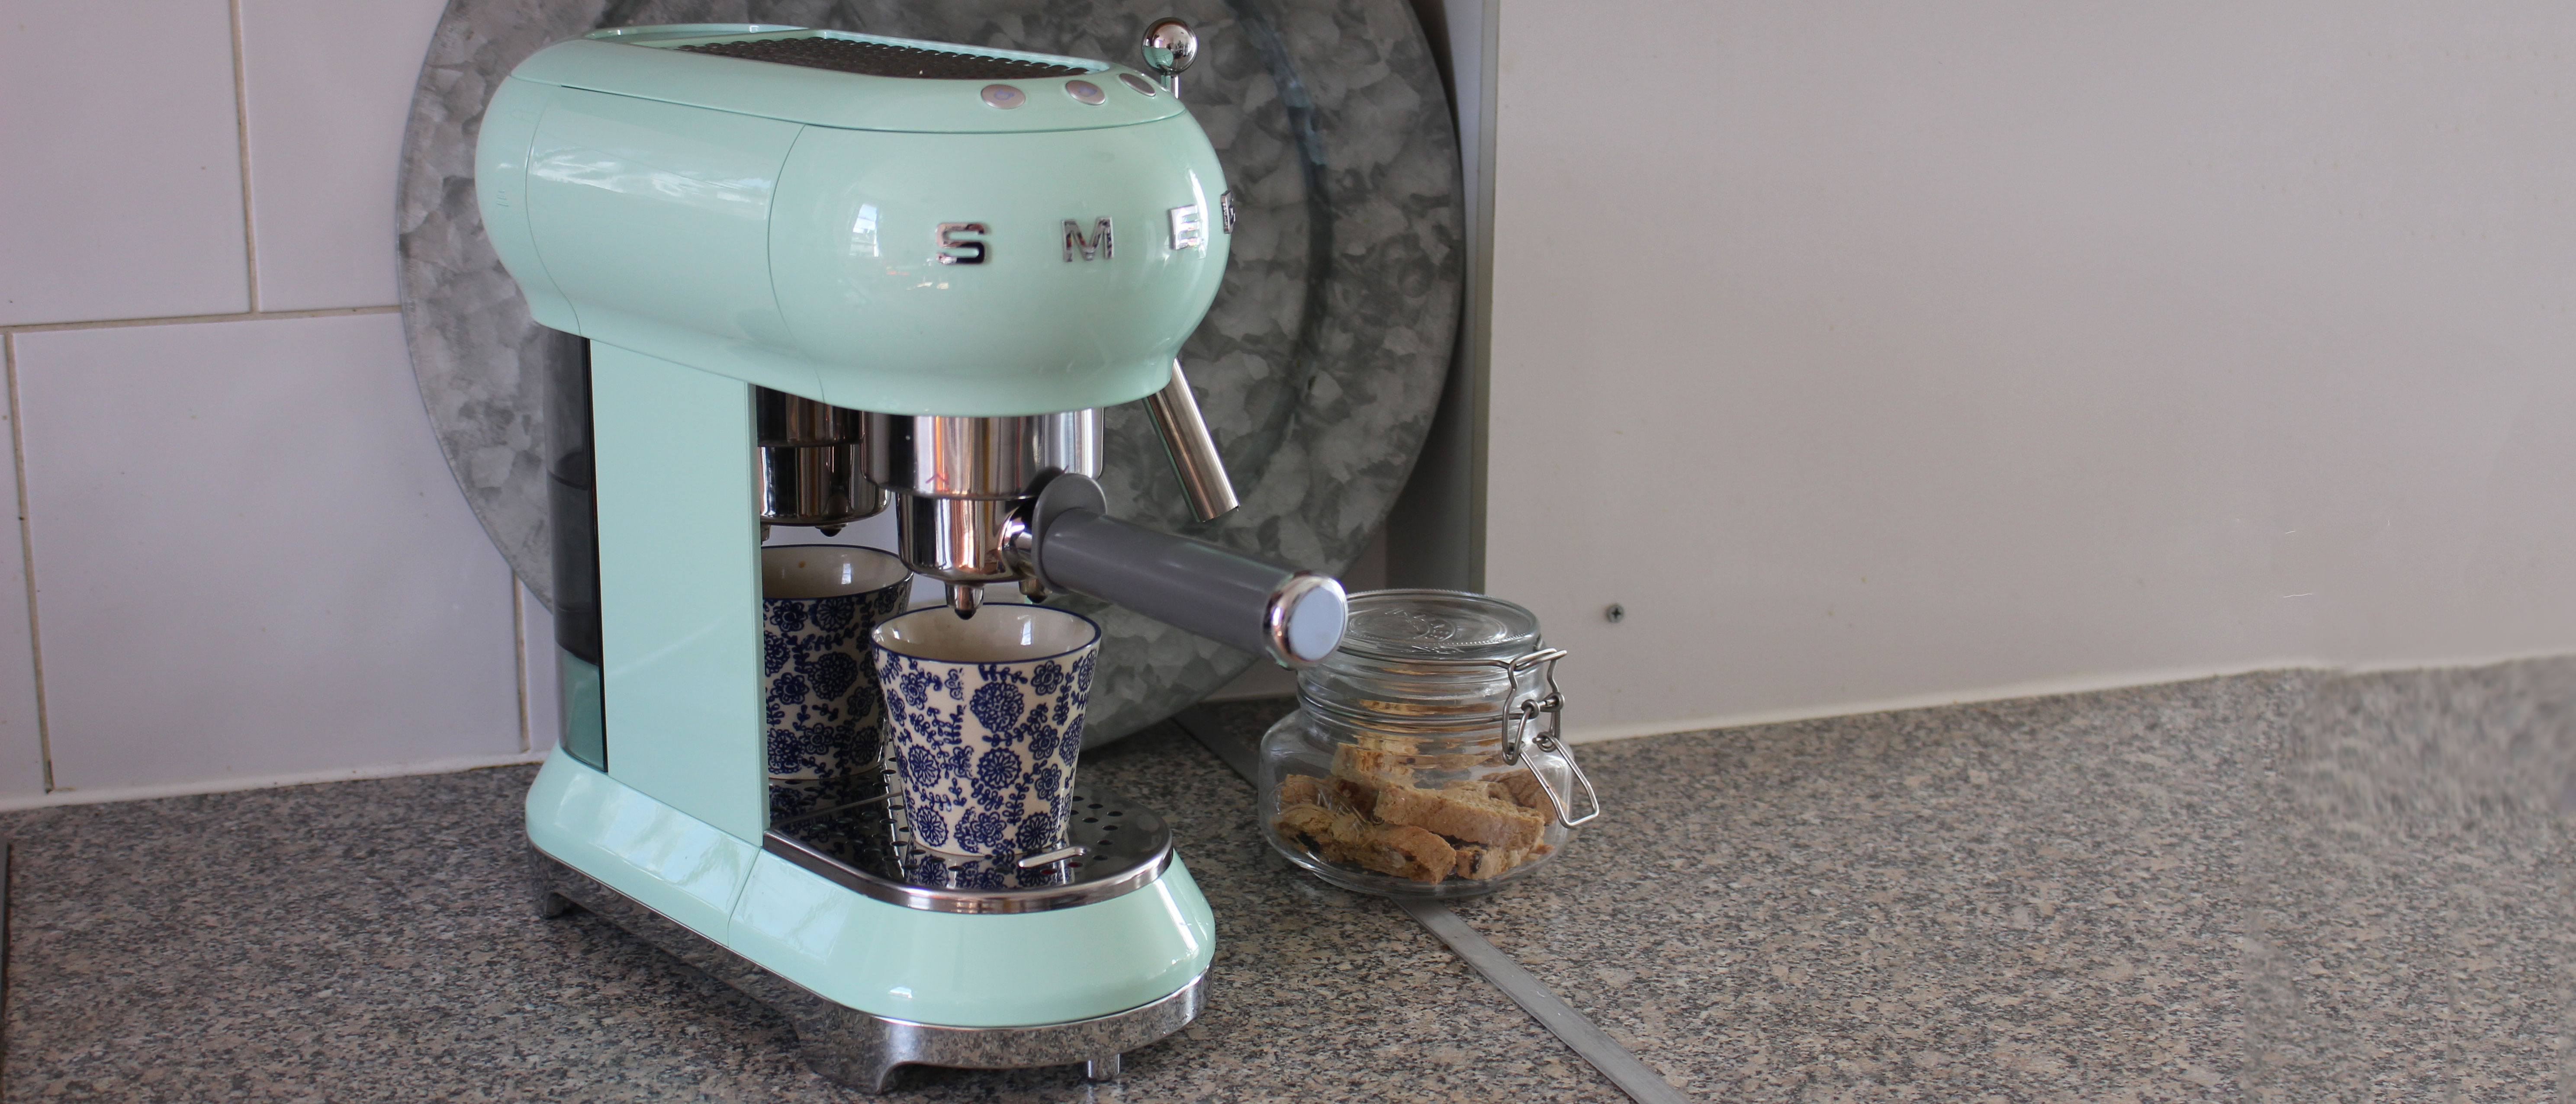 Smeg ECF01 Espresso Coffee Machine review